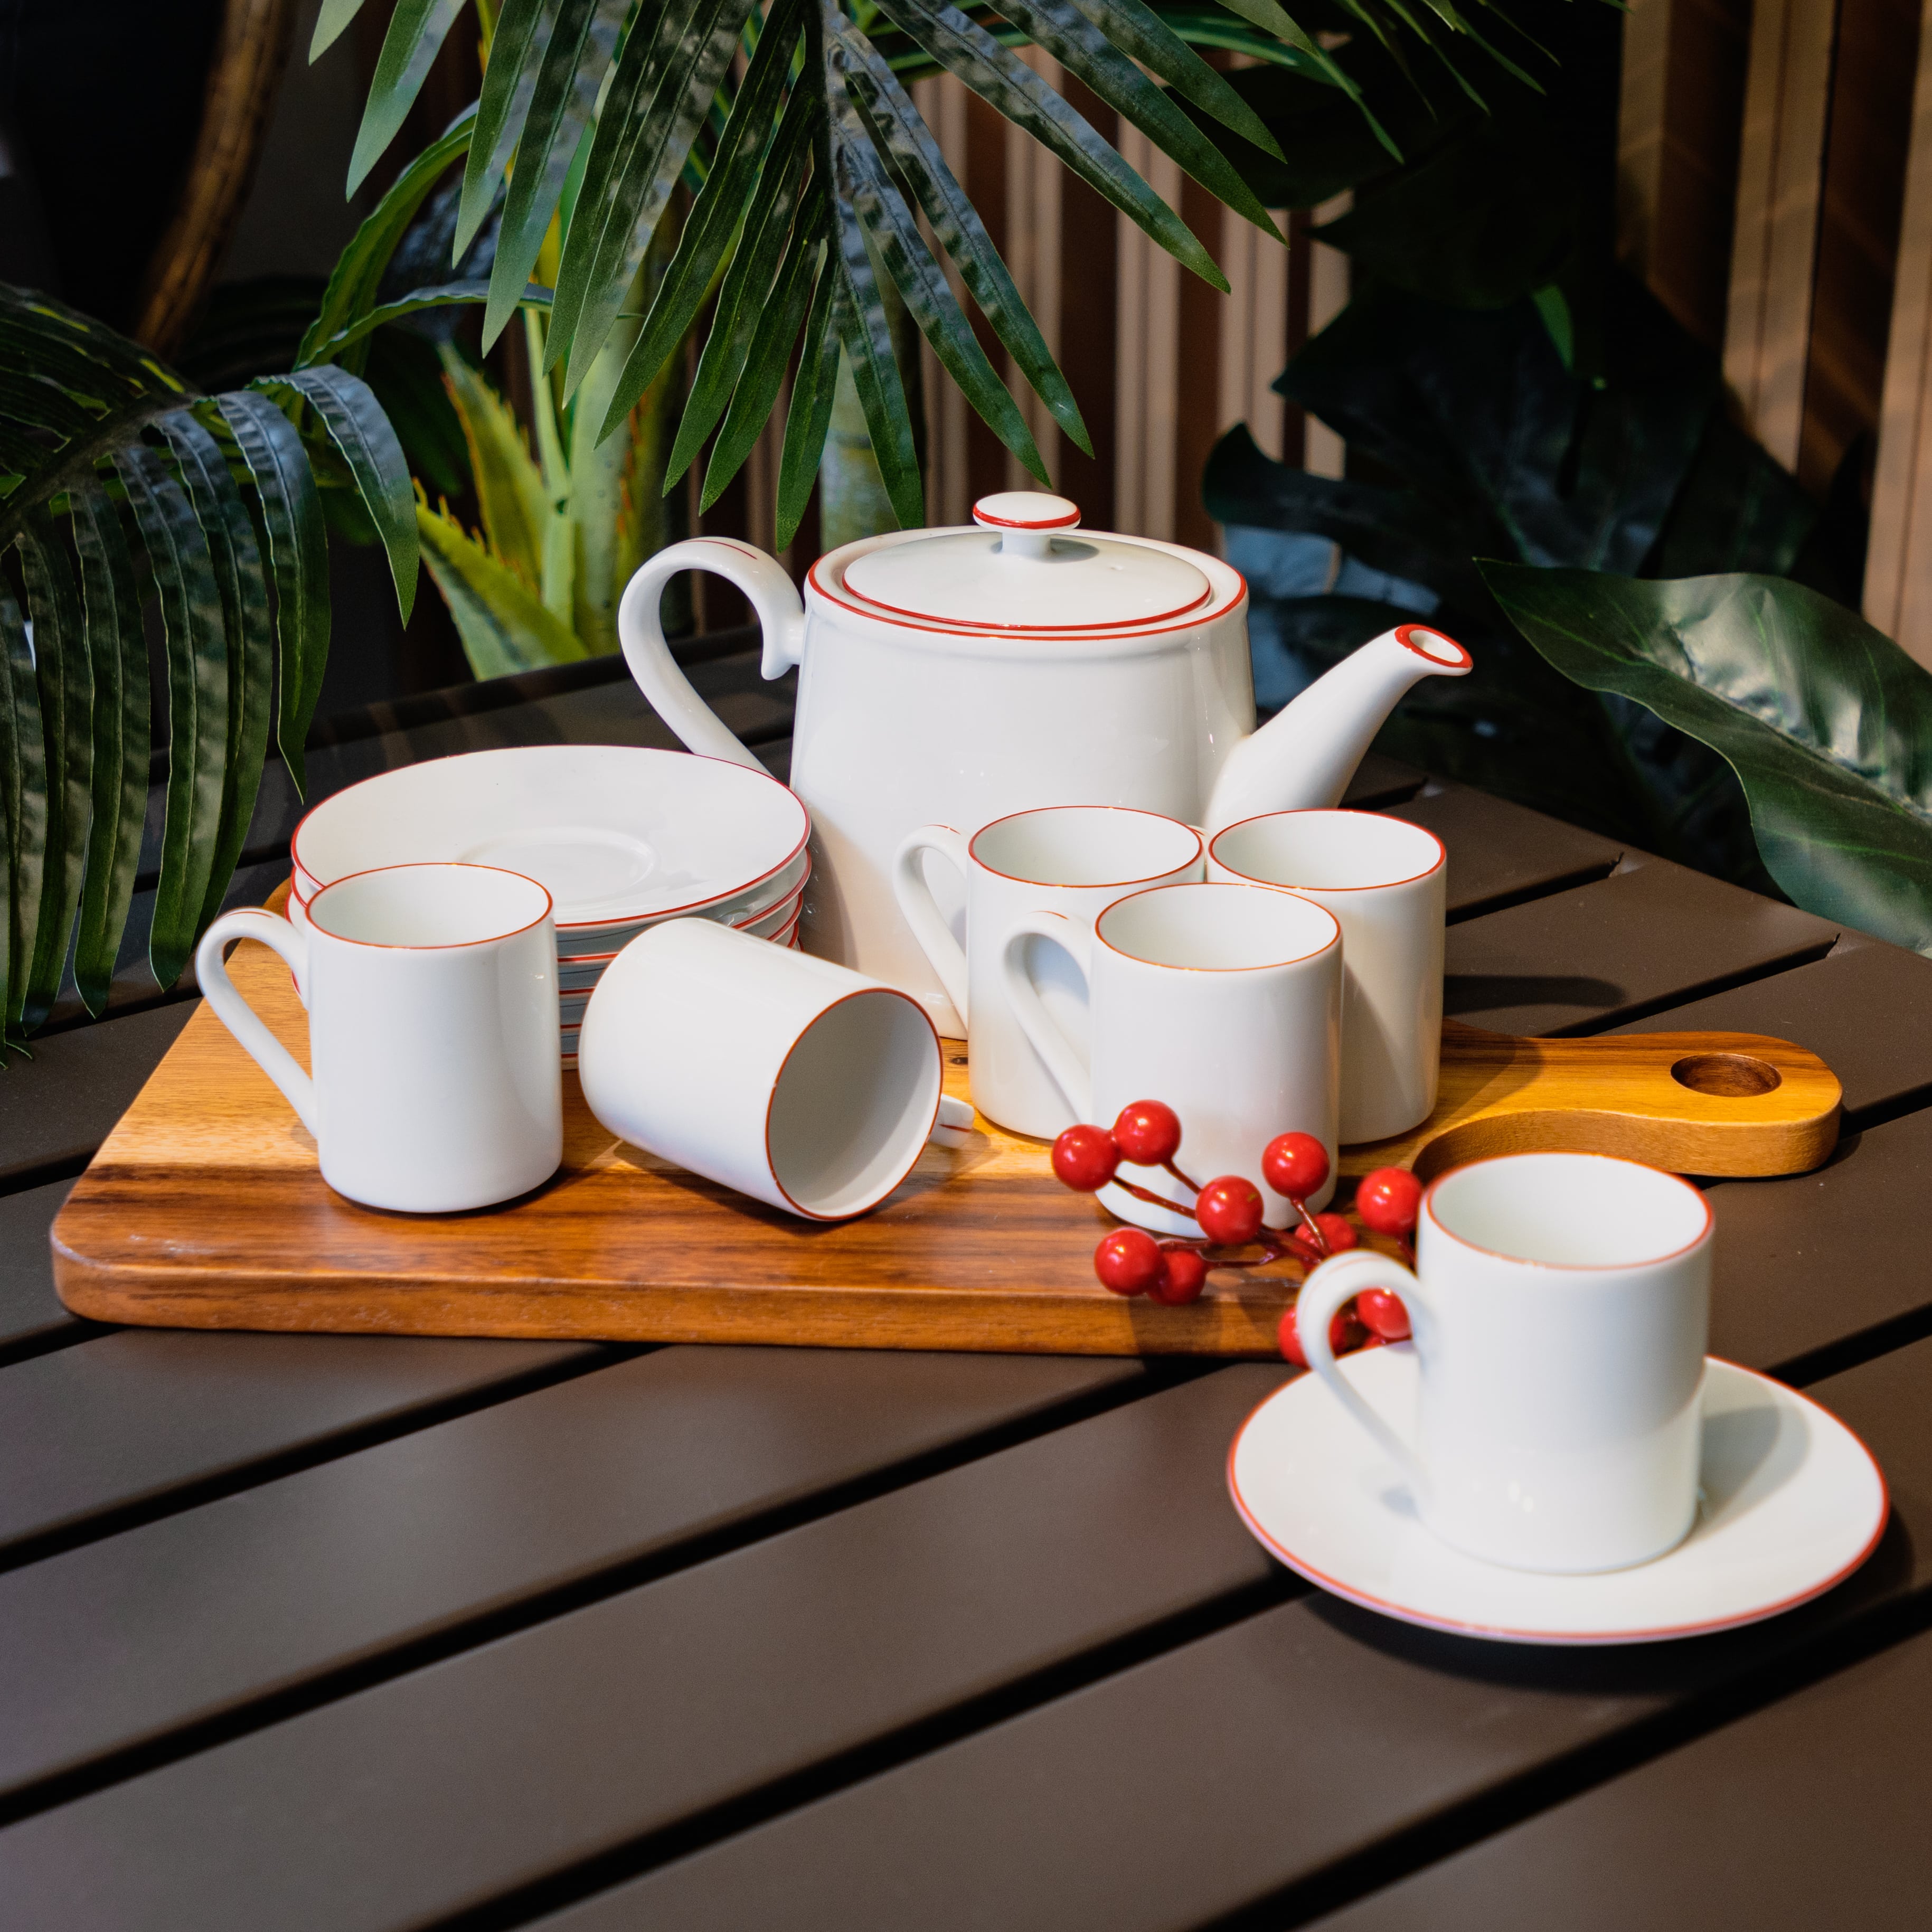 Bộ ấm chén kèm 6 tách uống trà bằng sành đẹp, cao cấp CHERRY màu trắng viền đỏ sang trọng | Index Living Mall - Phân phối độc quyền tại Việt Nam